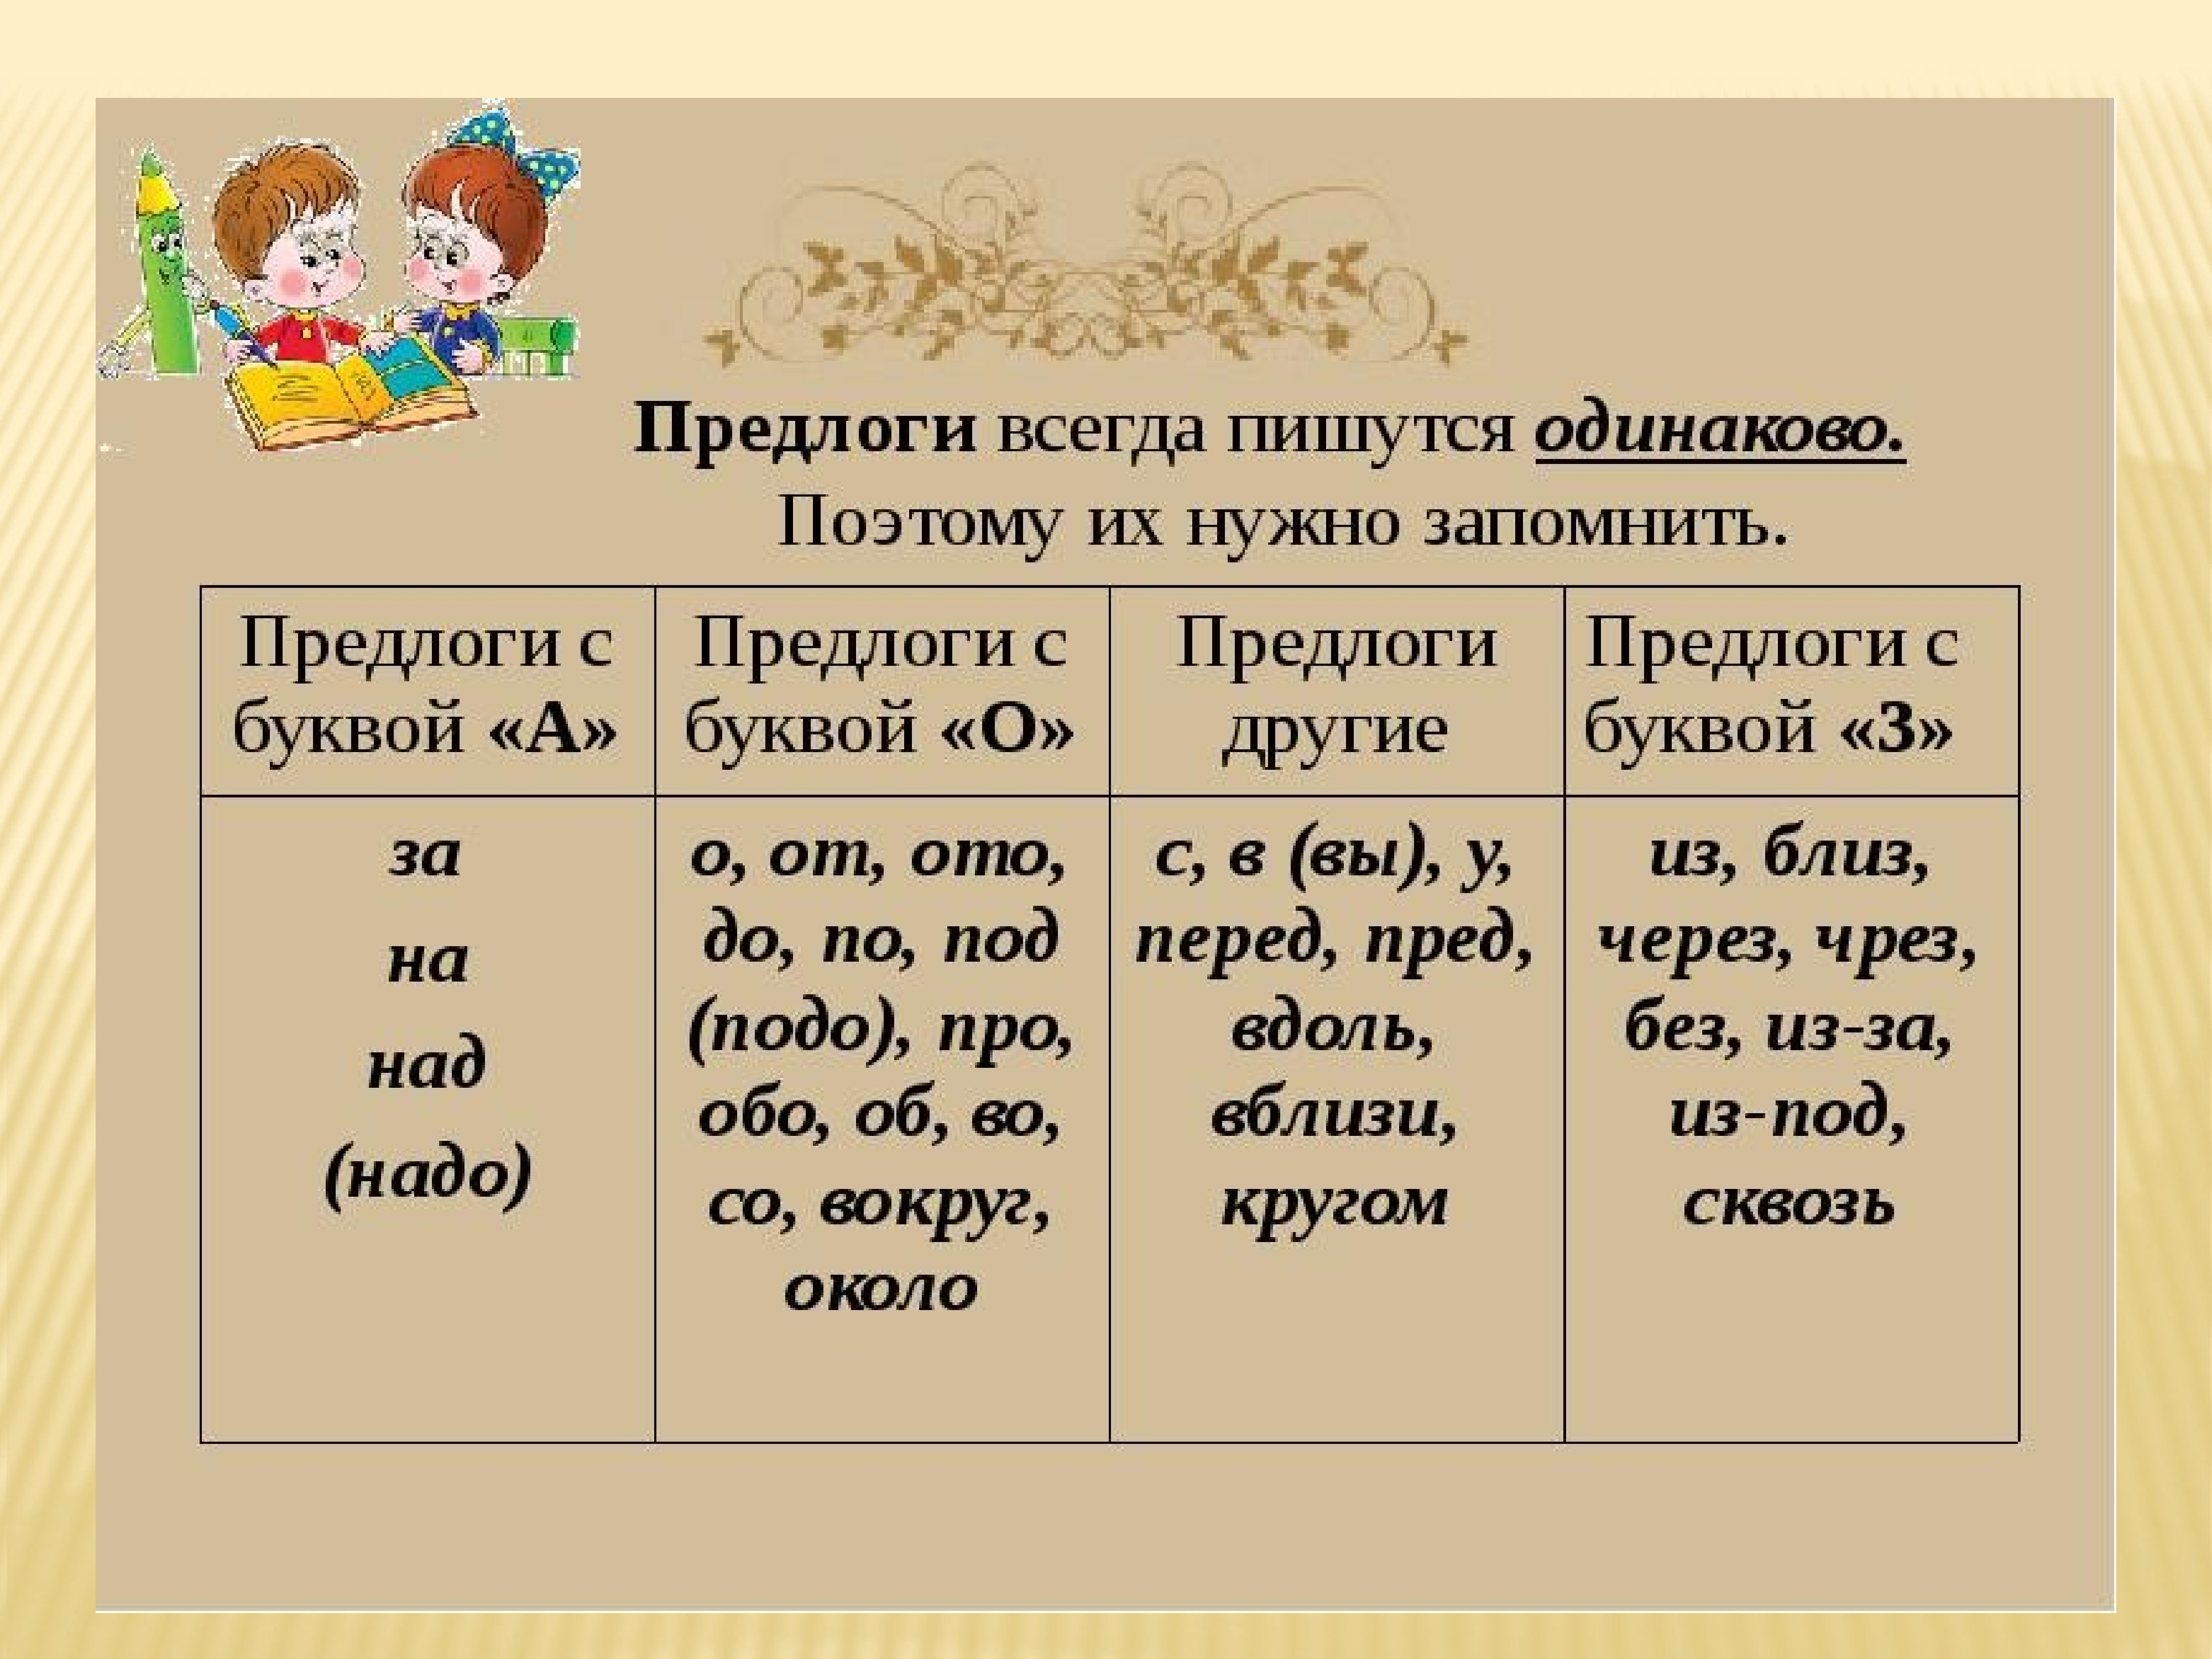 Например это предлог. Предлоги. Предлоги в русском языке. Впердоги в русском языке. Пердлоги в руском языке.